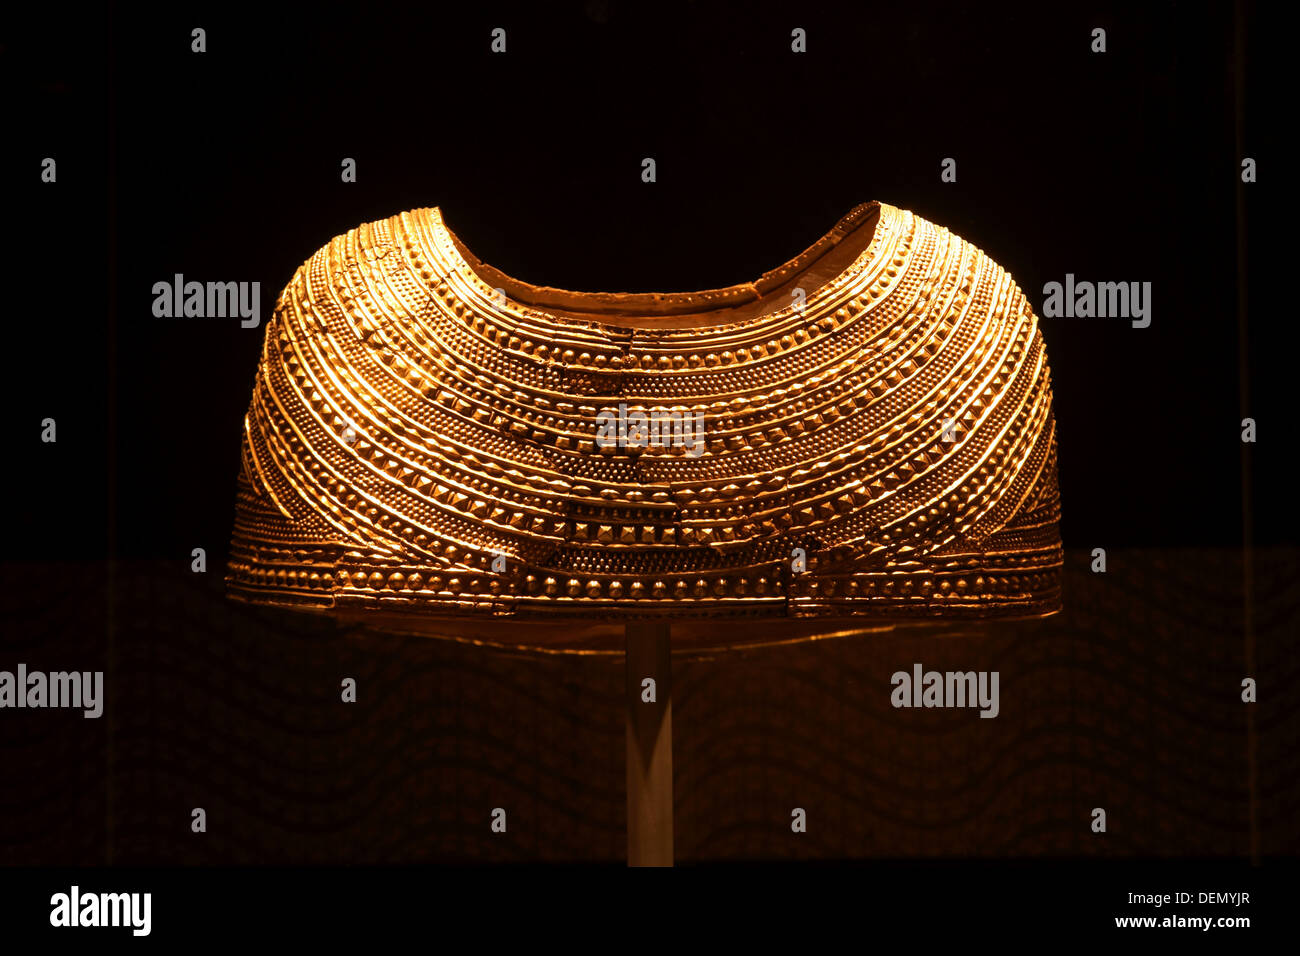 Das Mold Cape ein solides Blatt zeremonielles Gold Cape entdeckt in Wales aus etwa 1900-1600 v. Chr. in der europäischen Bronzezeit. Stockfoto